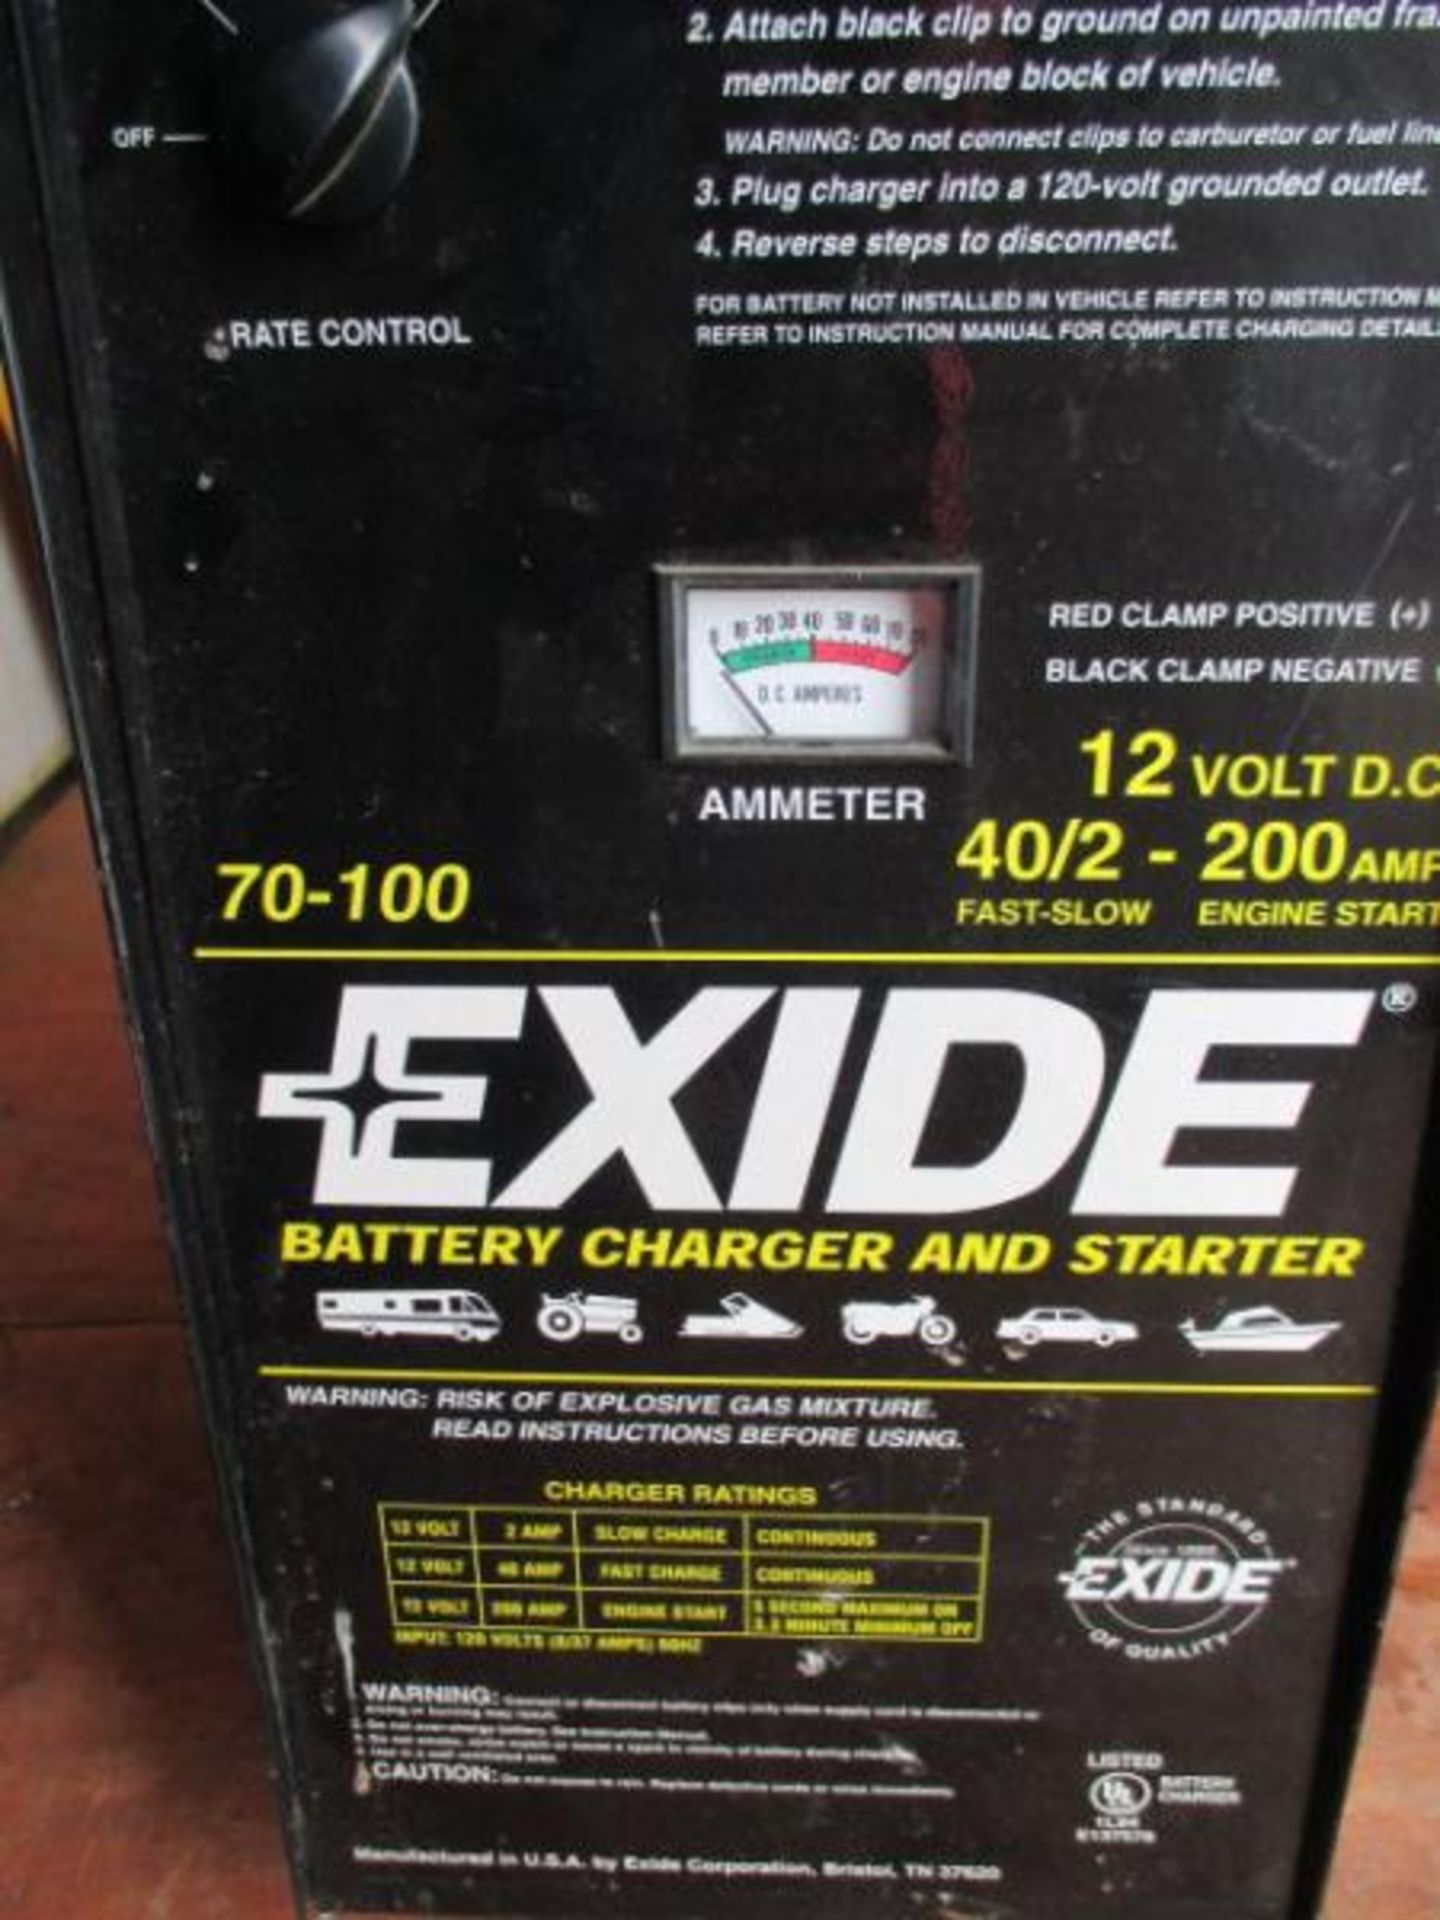 Exide Battery Charger & Starter, 70-100, 12 Volt D.C., 40 / 2 Fast / Slow, 200 Amp Engine Start D. - Image 2 of 6